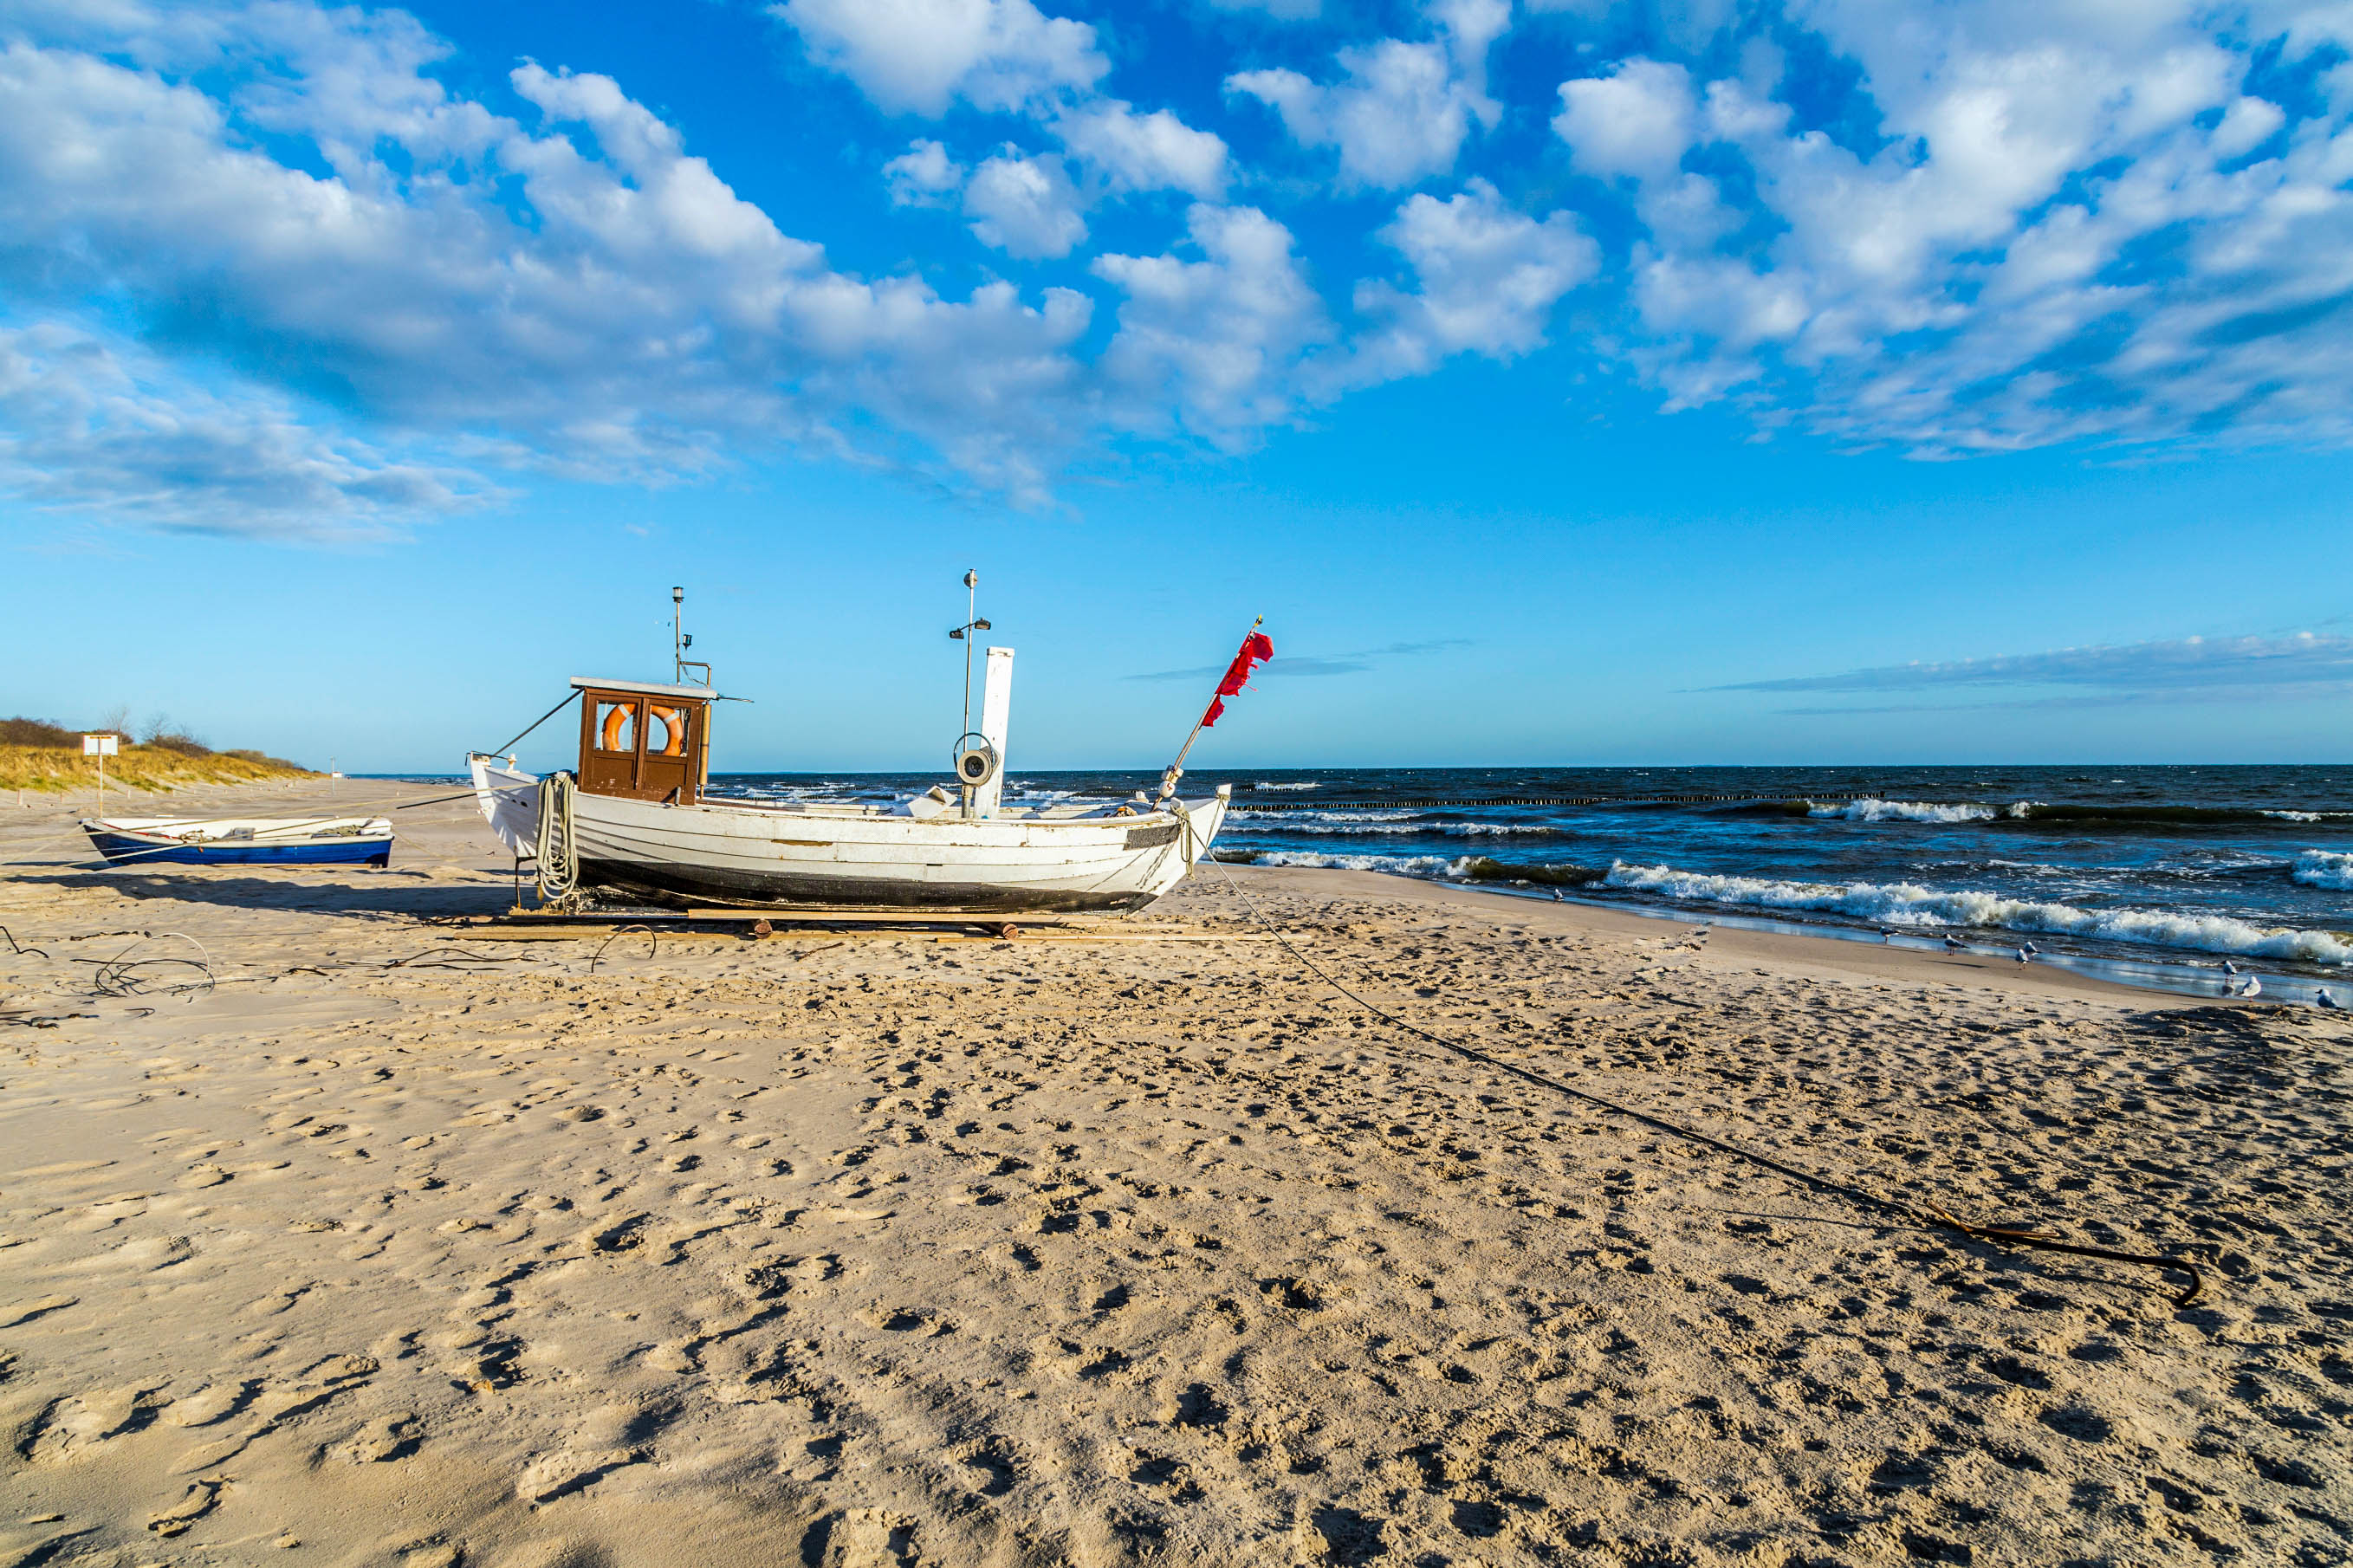 Sonneninsel Usedom: So schön ist Urlaub in Deutschland | Urlaubsguru